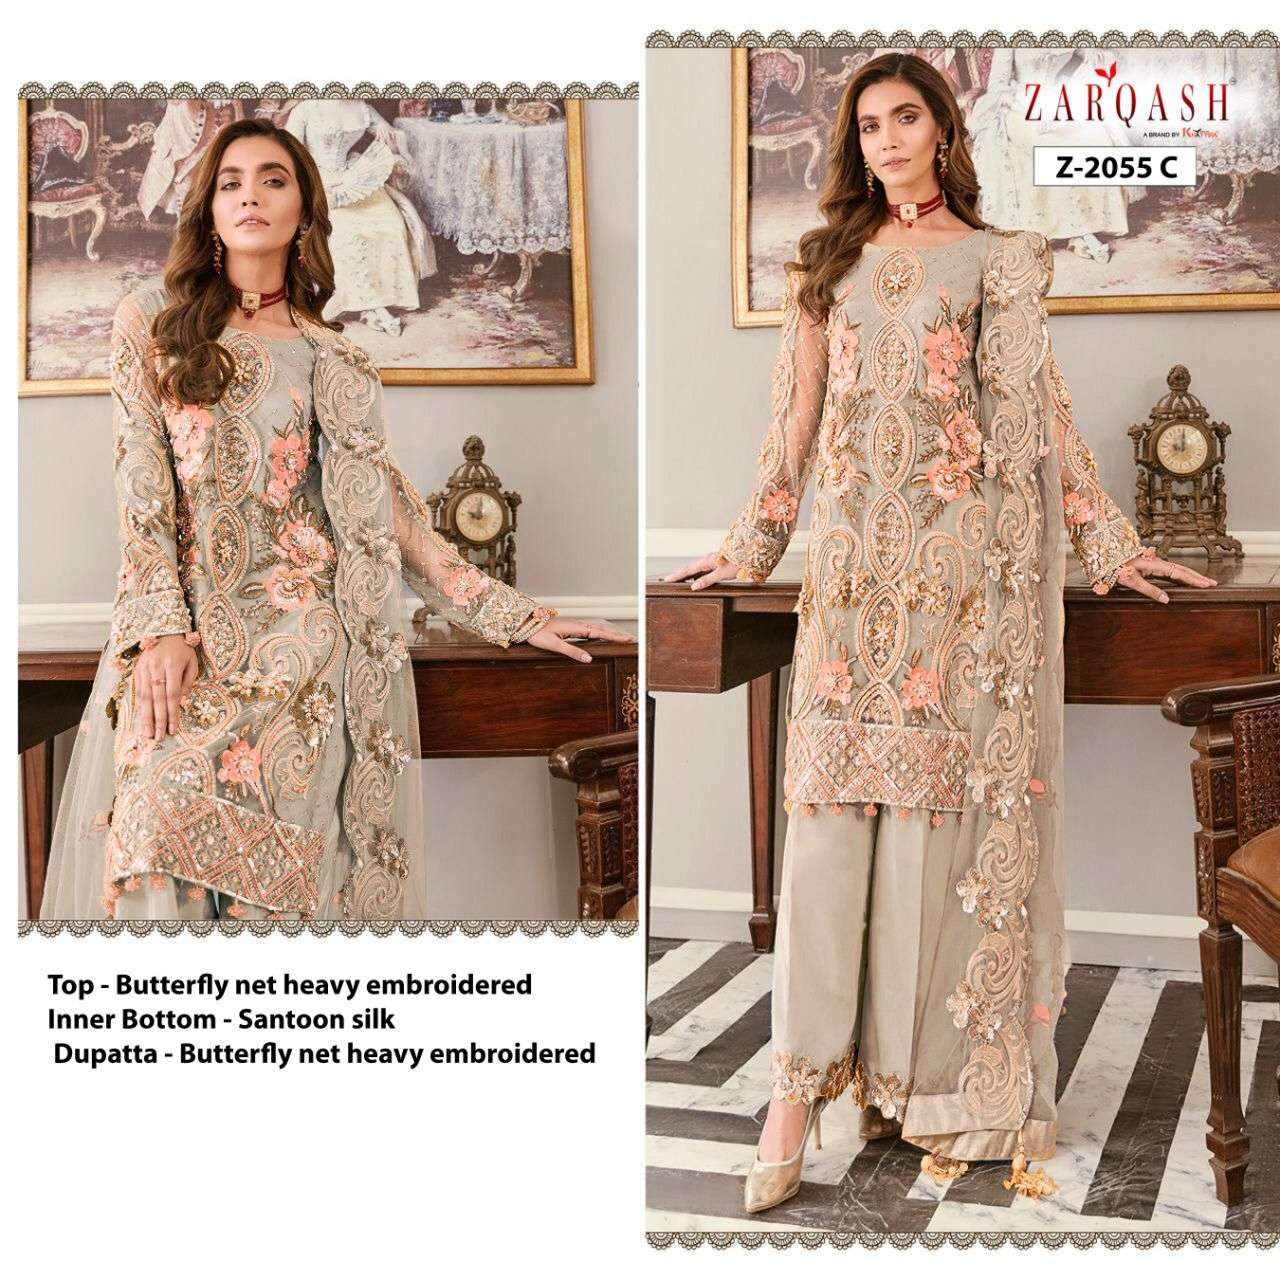 zarqash angelica 2055 colour edition wholesale pakistani salwar suits catalogue surat